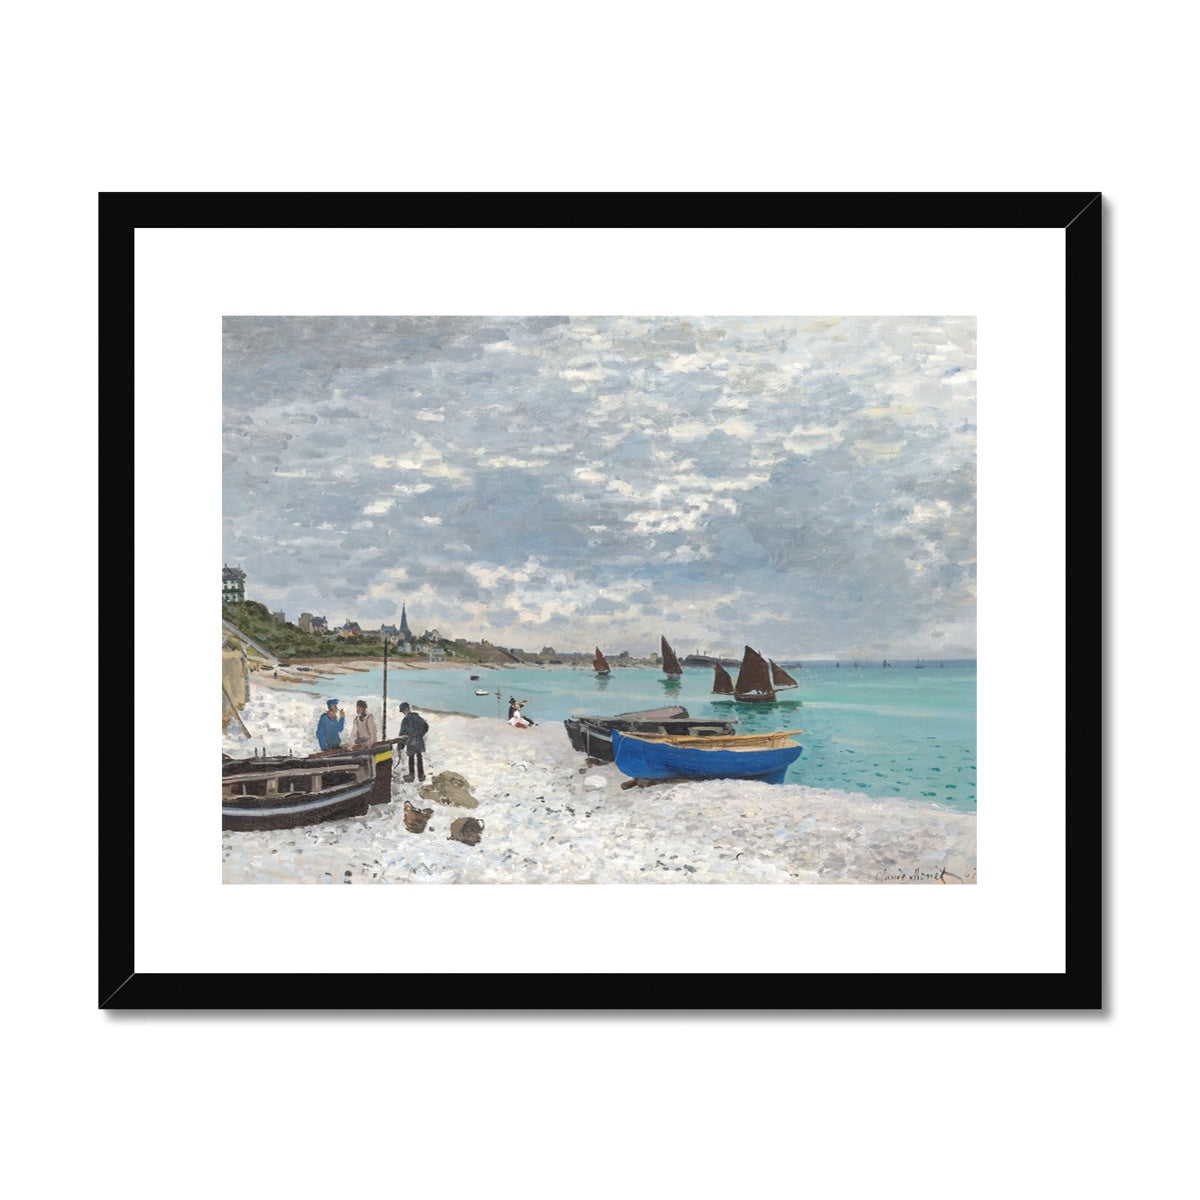 Claude Monet Framed Open Edition Art Print. 'The Beach at Sainte-Adresse'. Art Gallery Historic Art